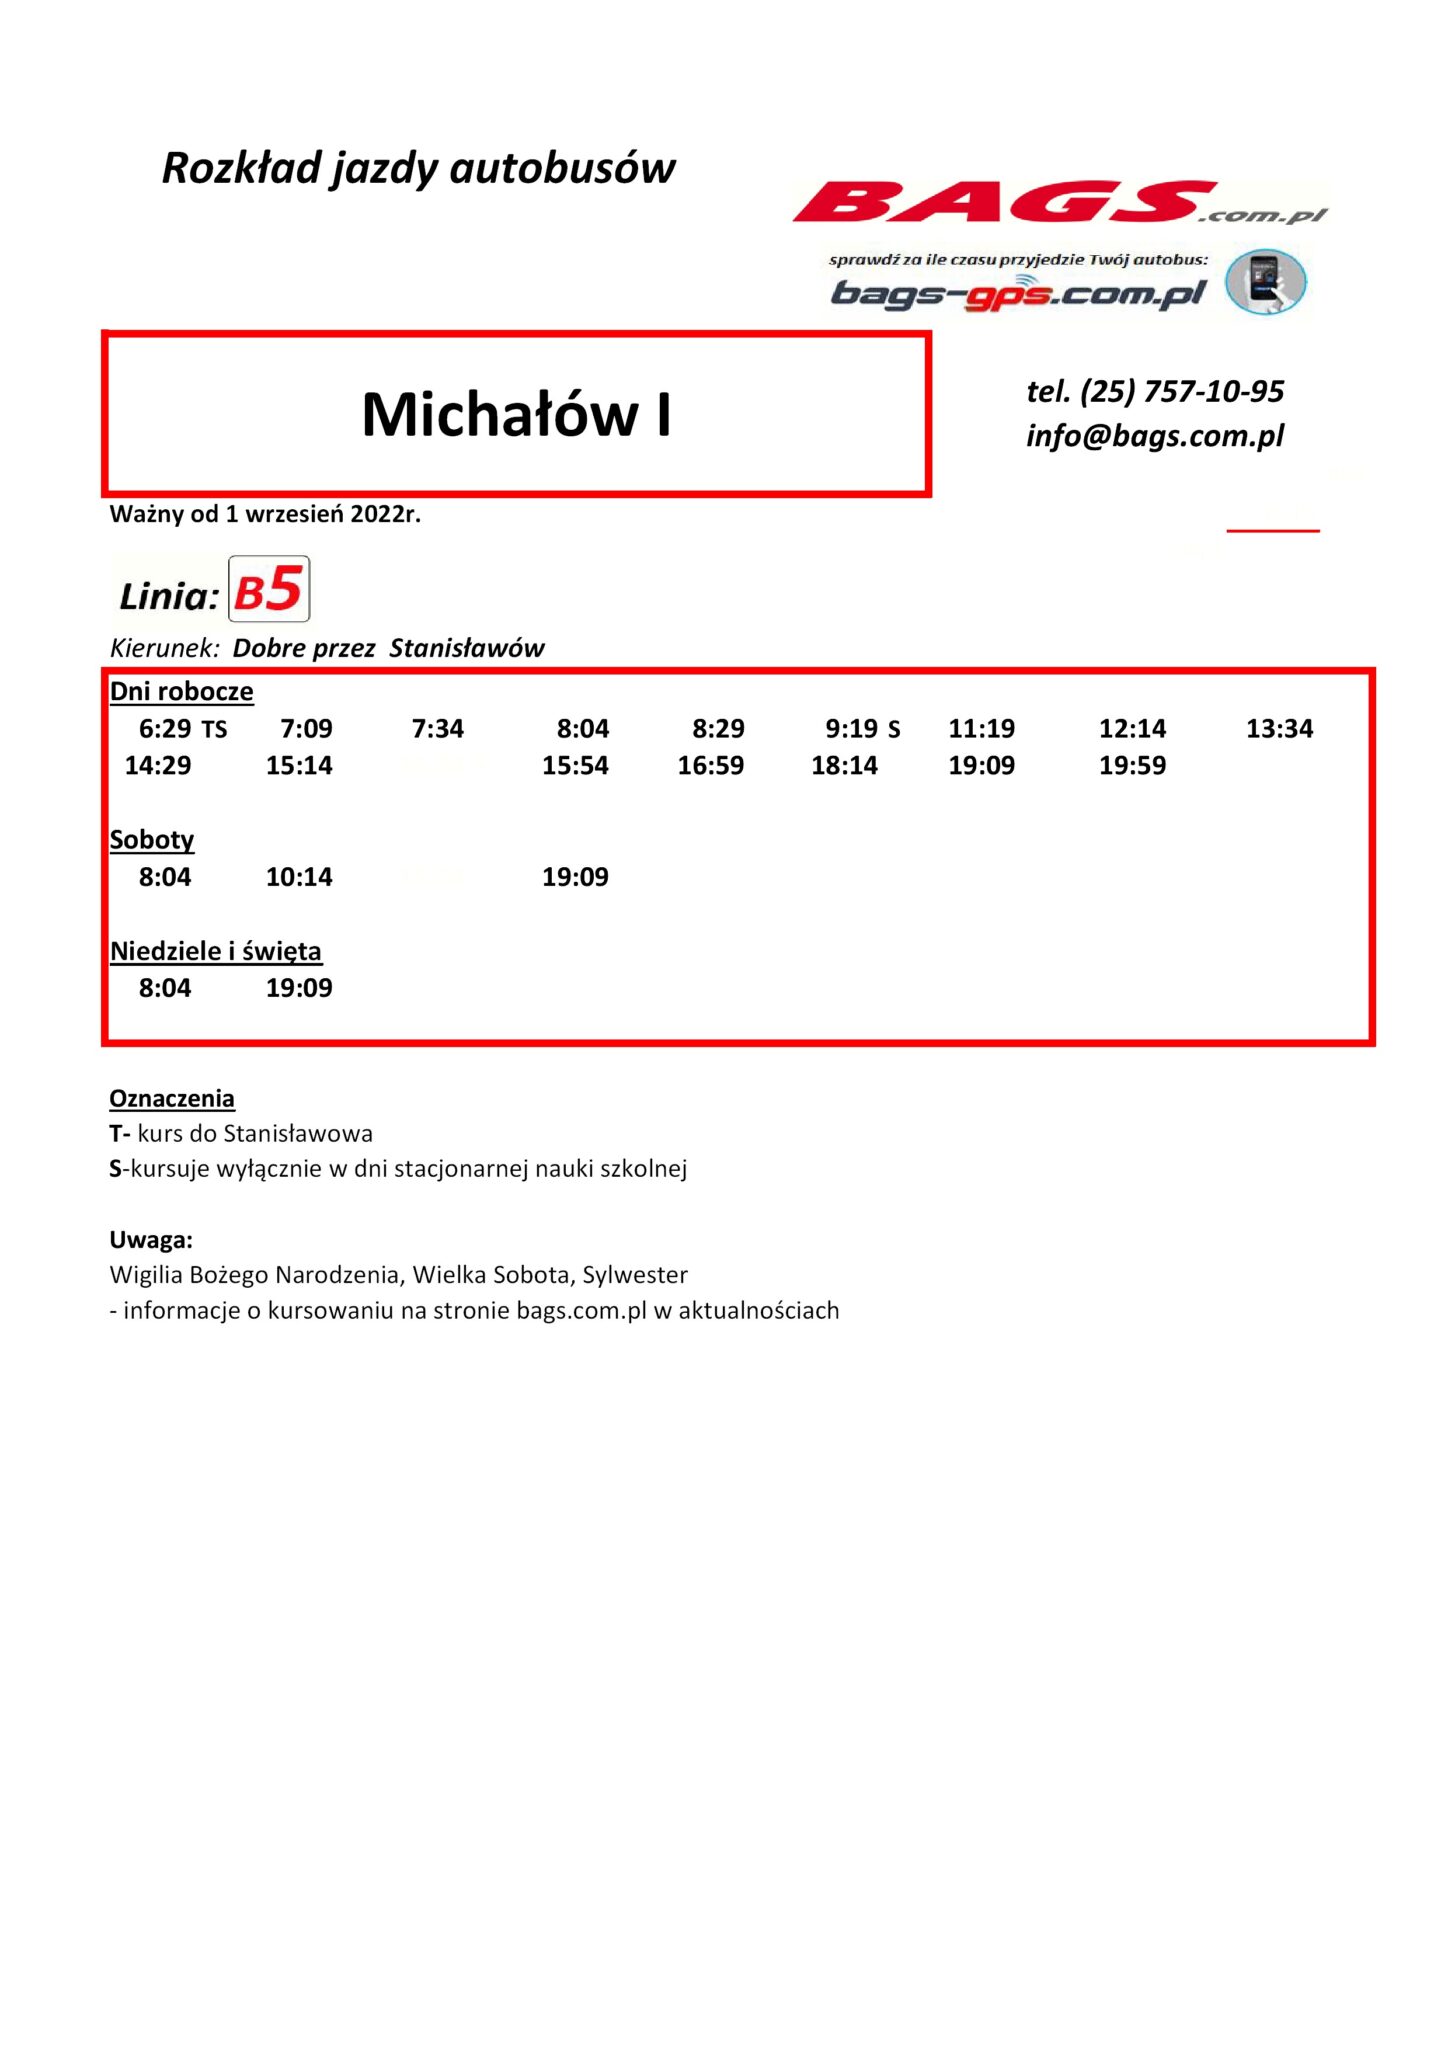 Michalow-I-1-1-1448x2048